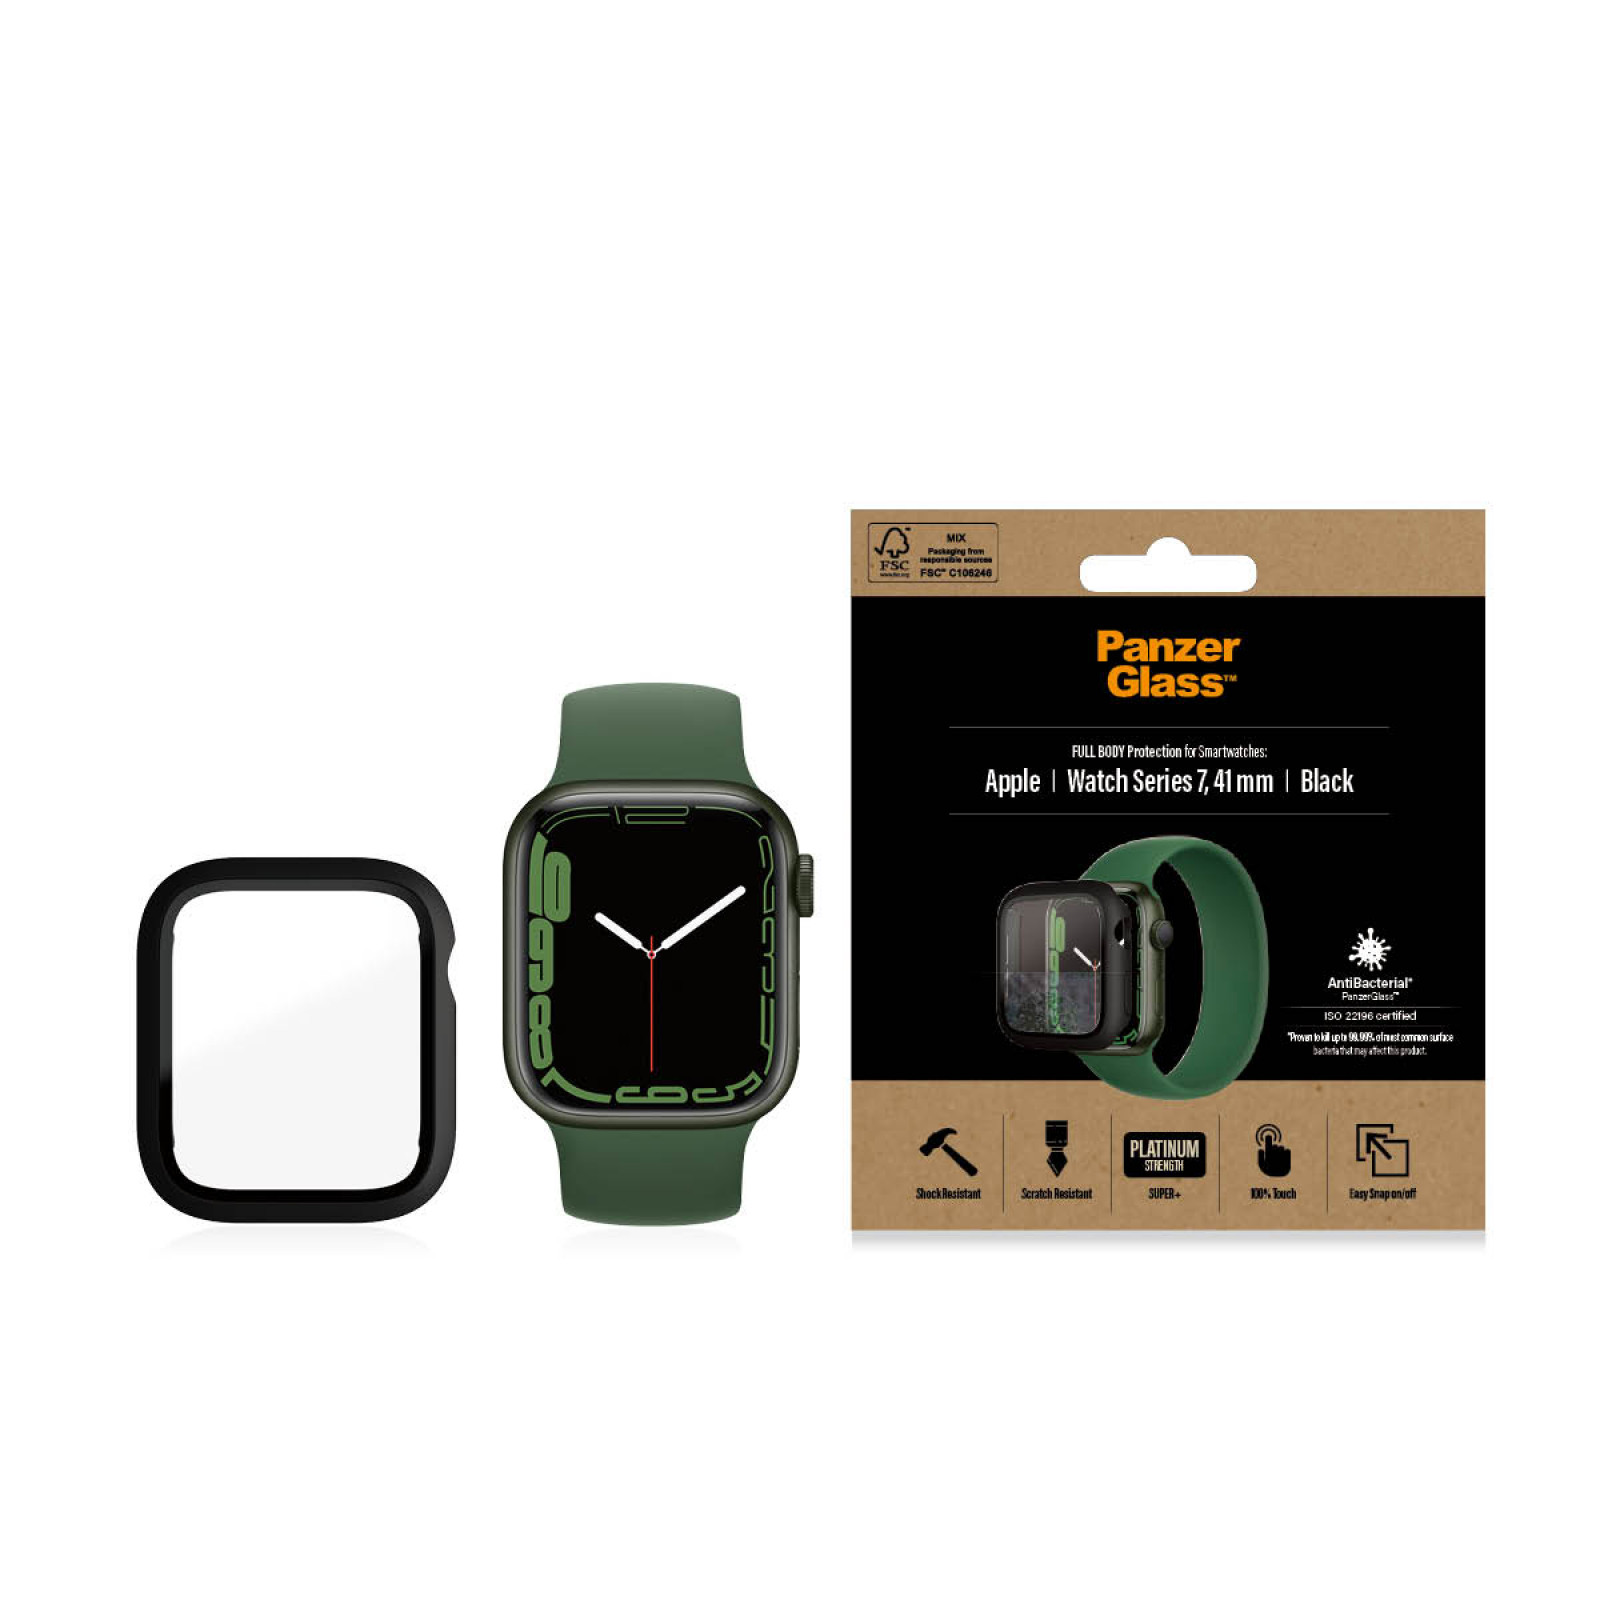 Стъклен протектор за часовник със силиконова рамка PanzerGlass за Apple watch Series 7, 41mm, AntiBacteria - Черна  рамка